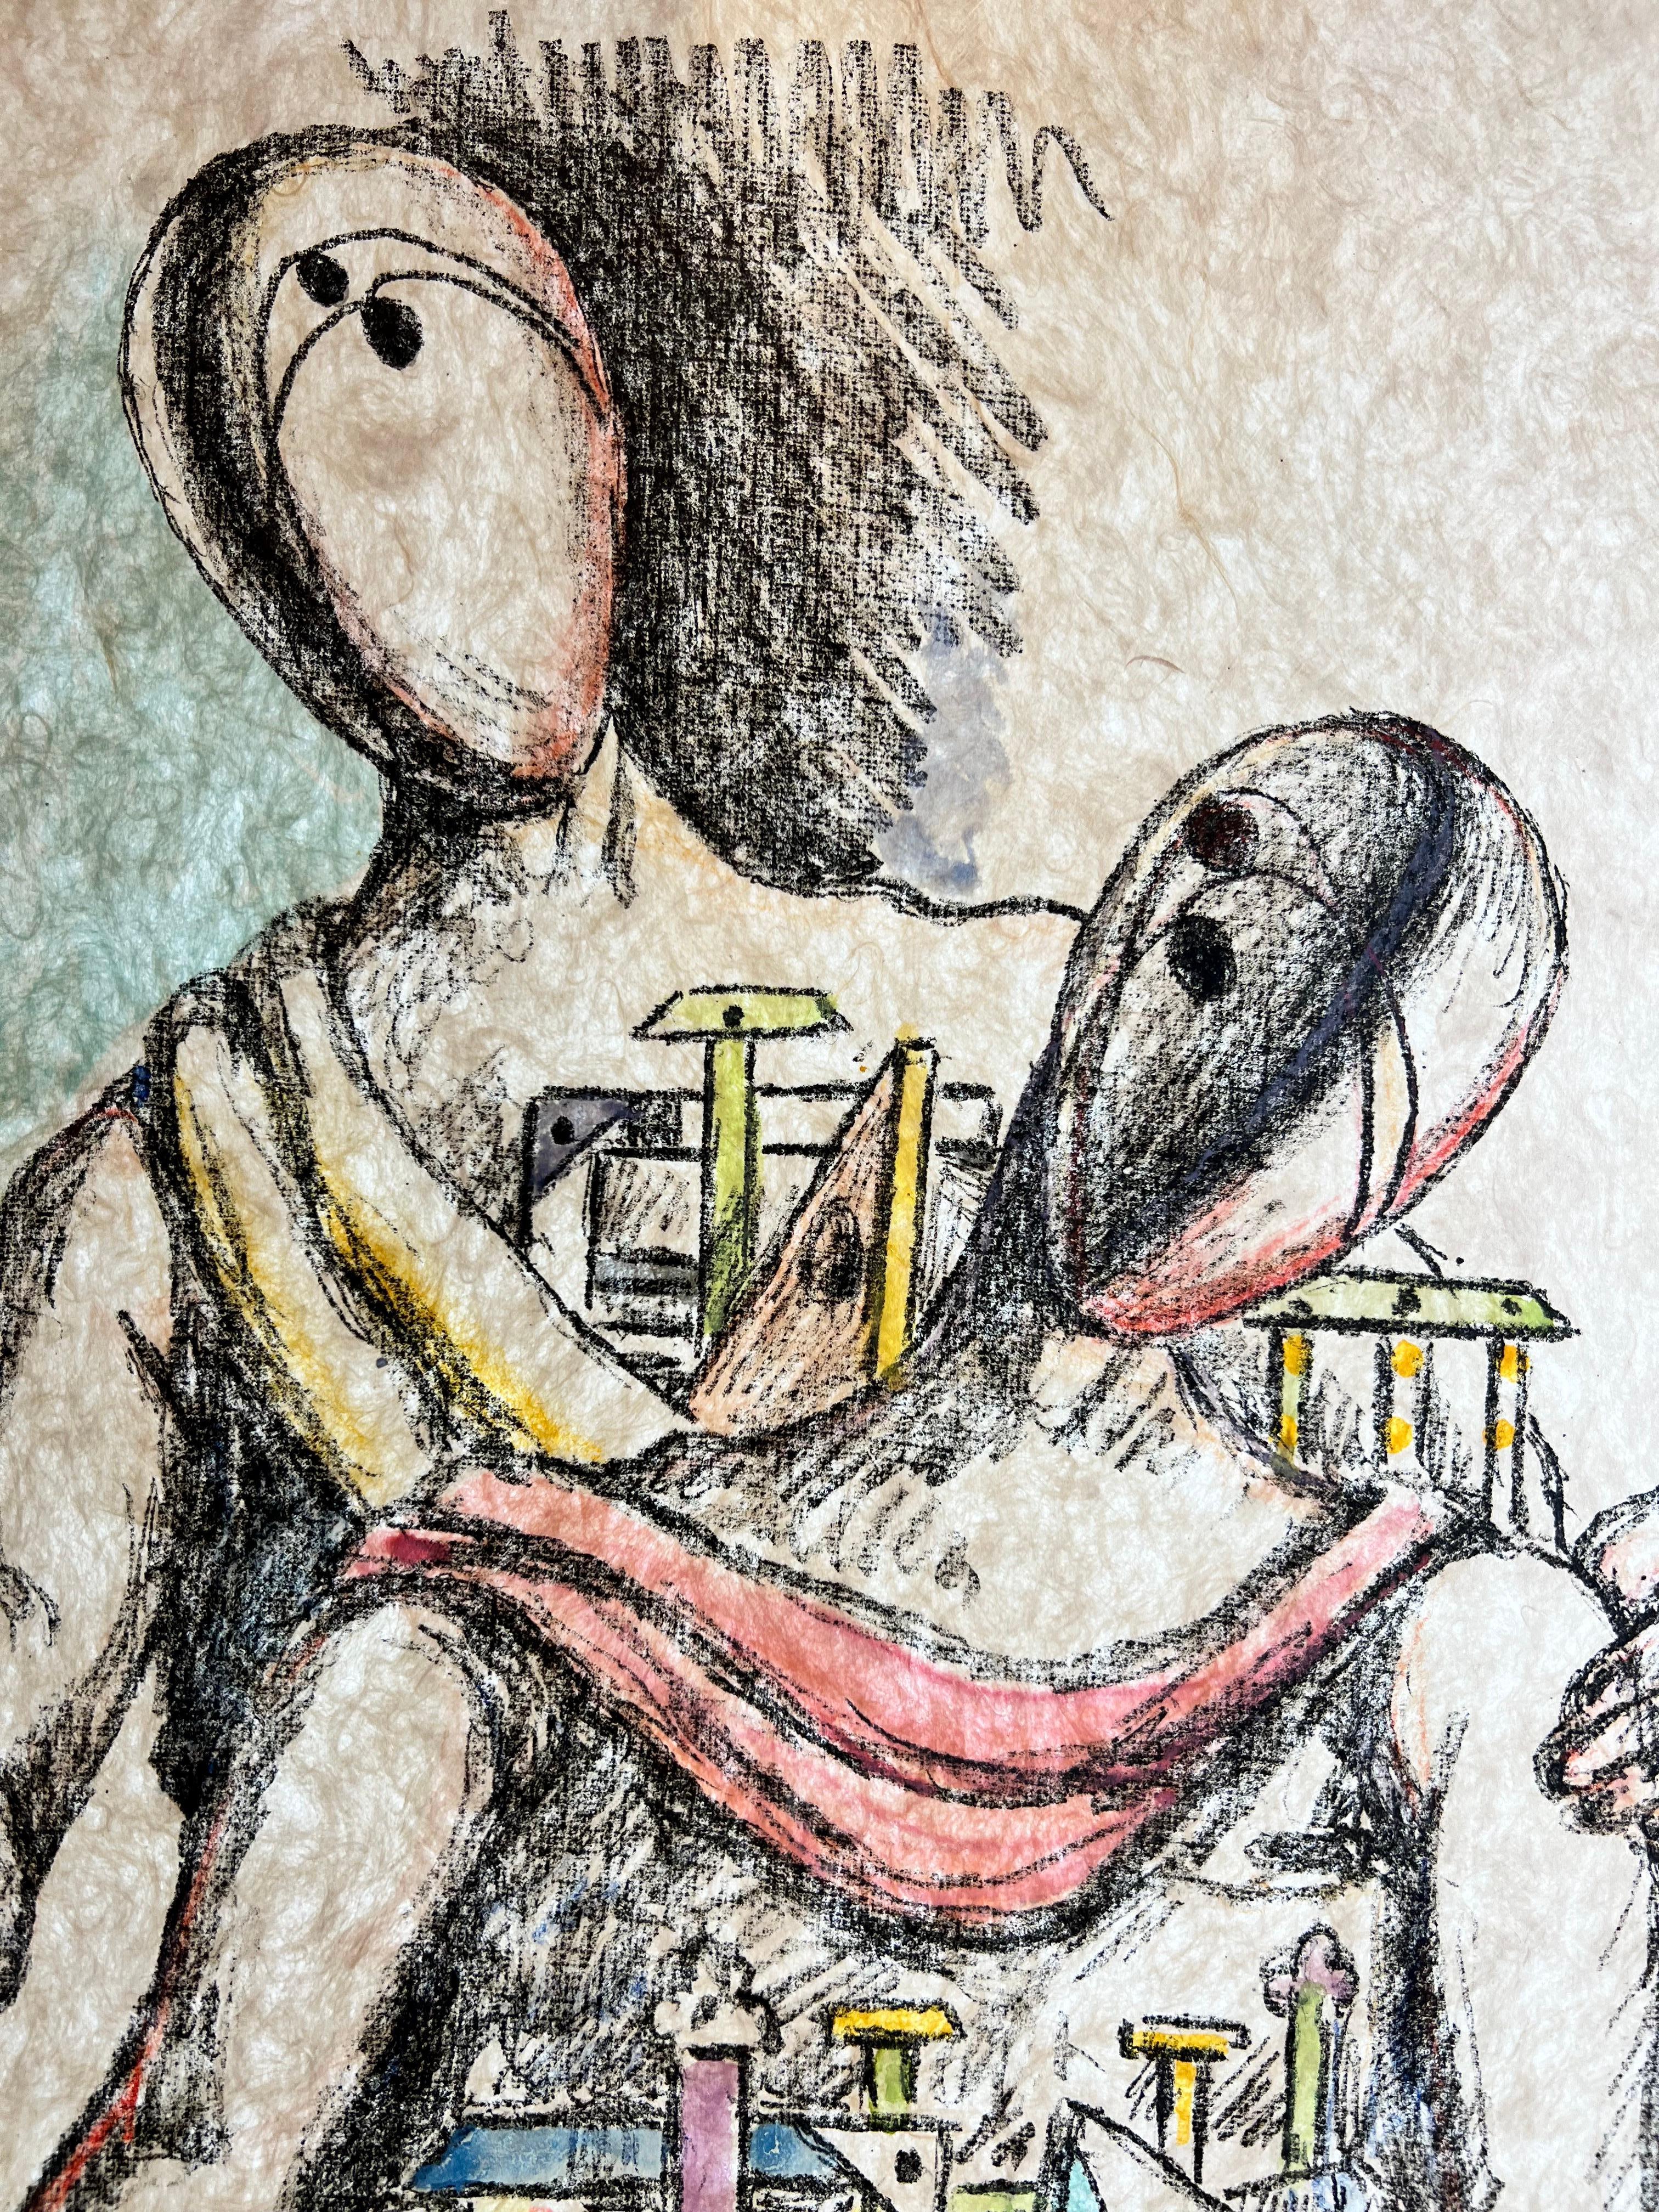  Giorgio De Chirico - Gli Archeologi -Lithograph hand-watercolored by the artist 2